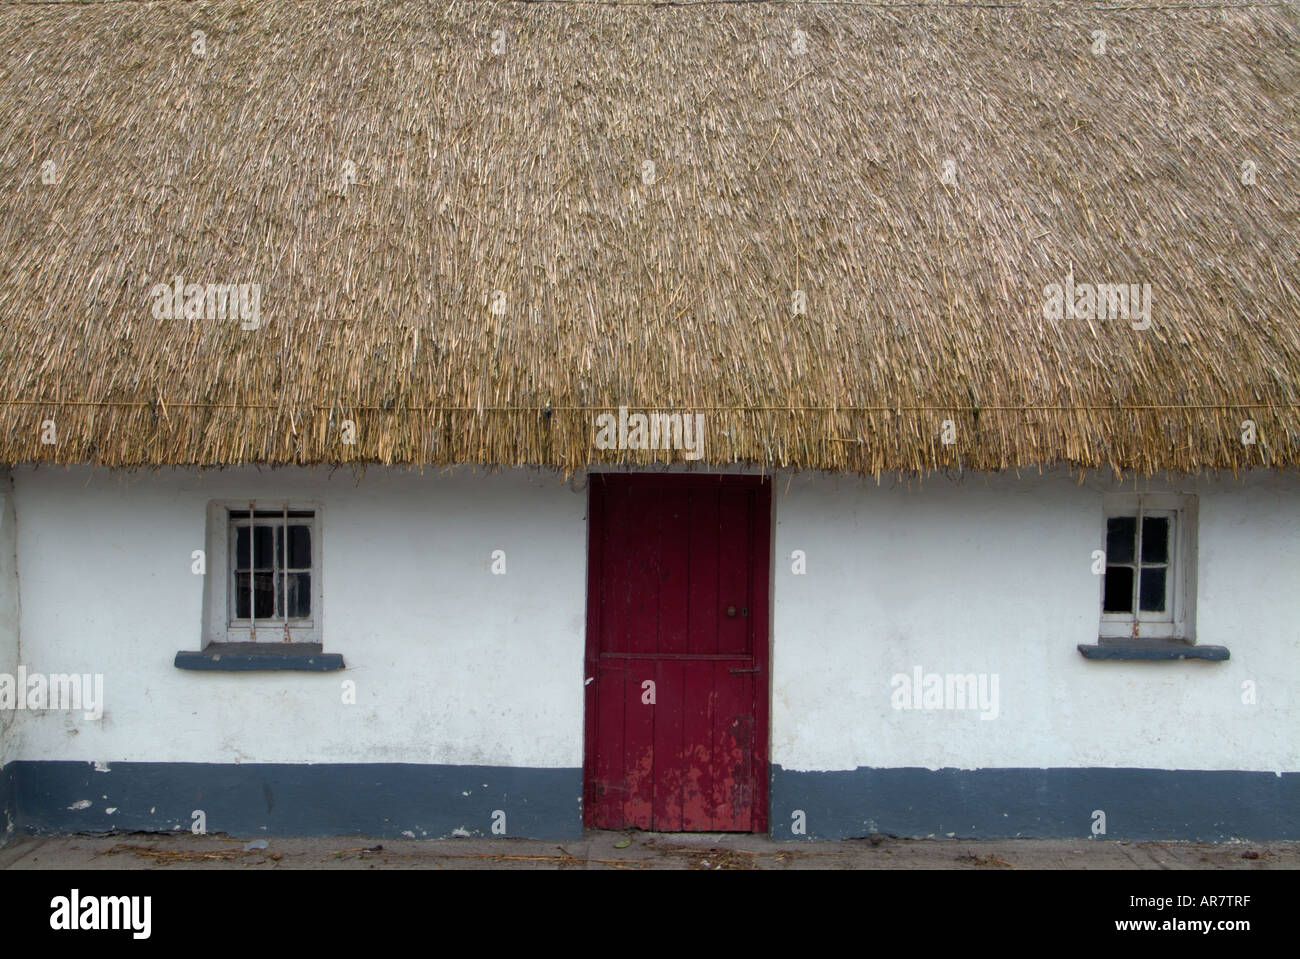 Maison de Phil Barron,Clogh,maison de chaume,maison de chaume,chaume,traditionnel,maison de toit de chaume à Clogh, Castlecomer, comté de Kilkenny, Irlande, Banque D'Images